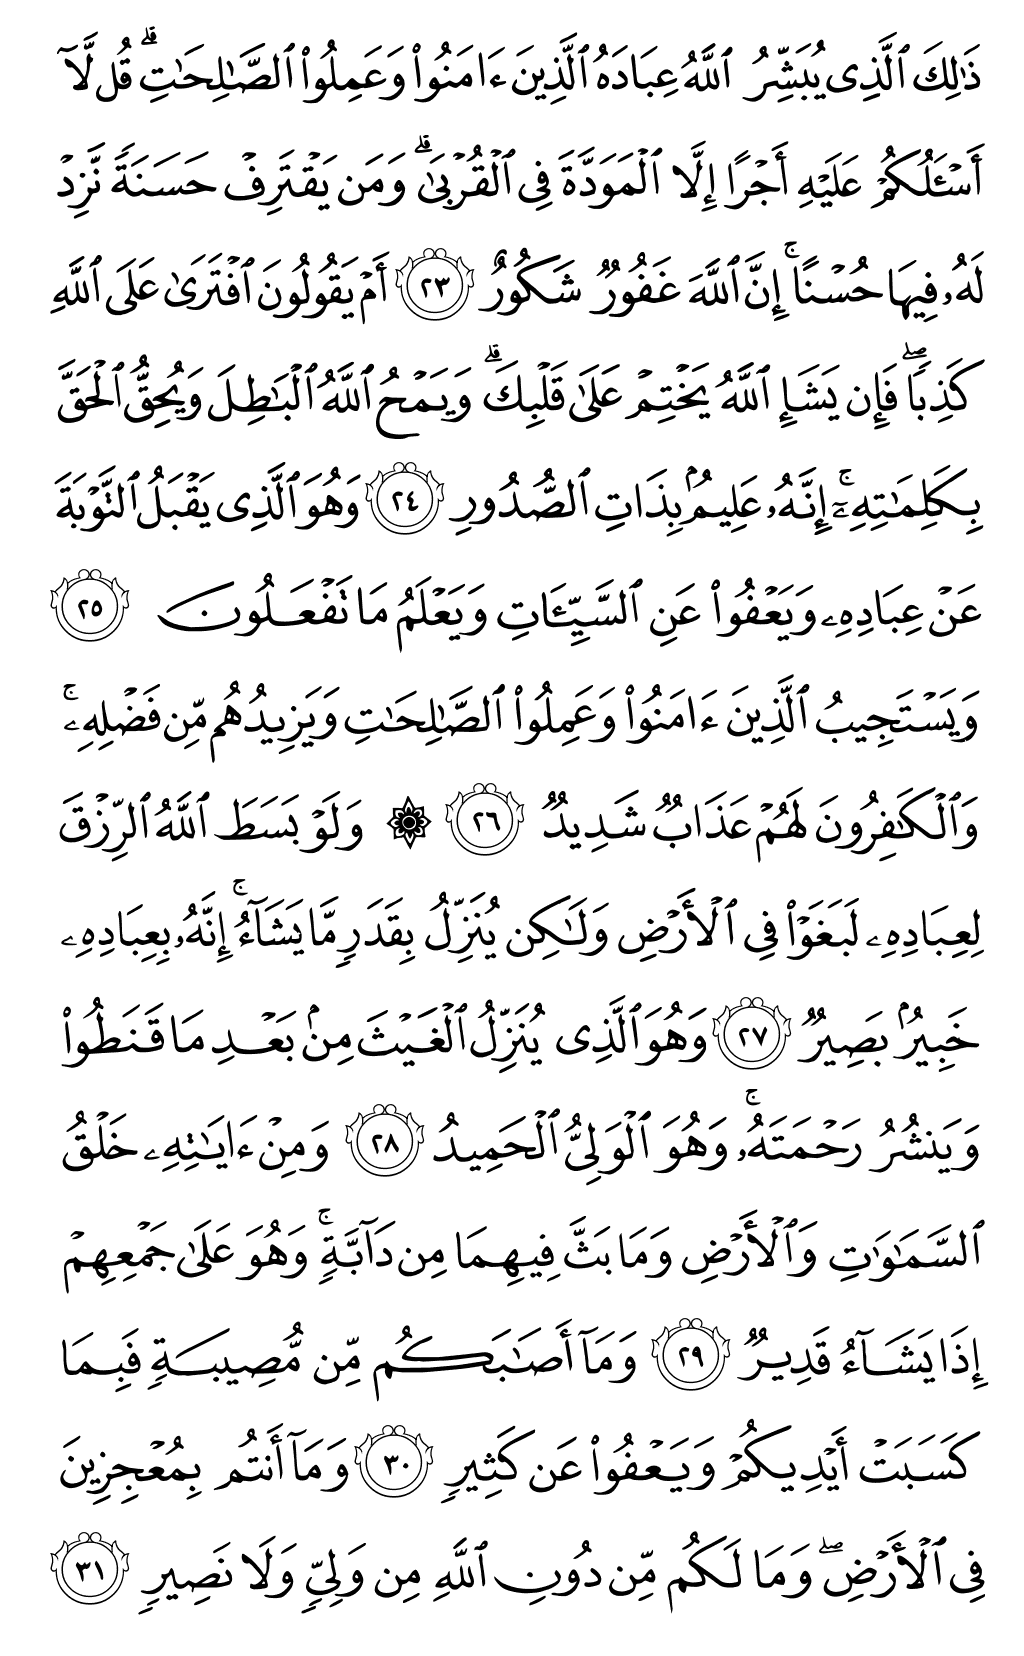 الصفحة رقم 486 من القرآن الكريم